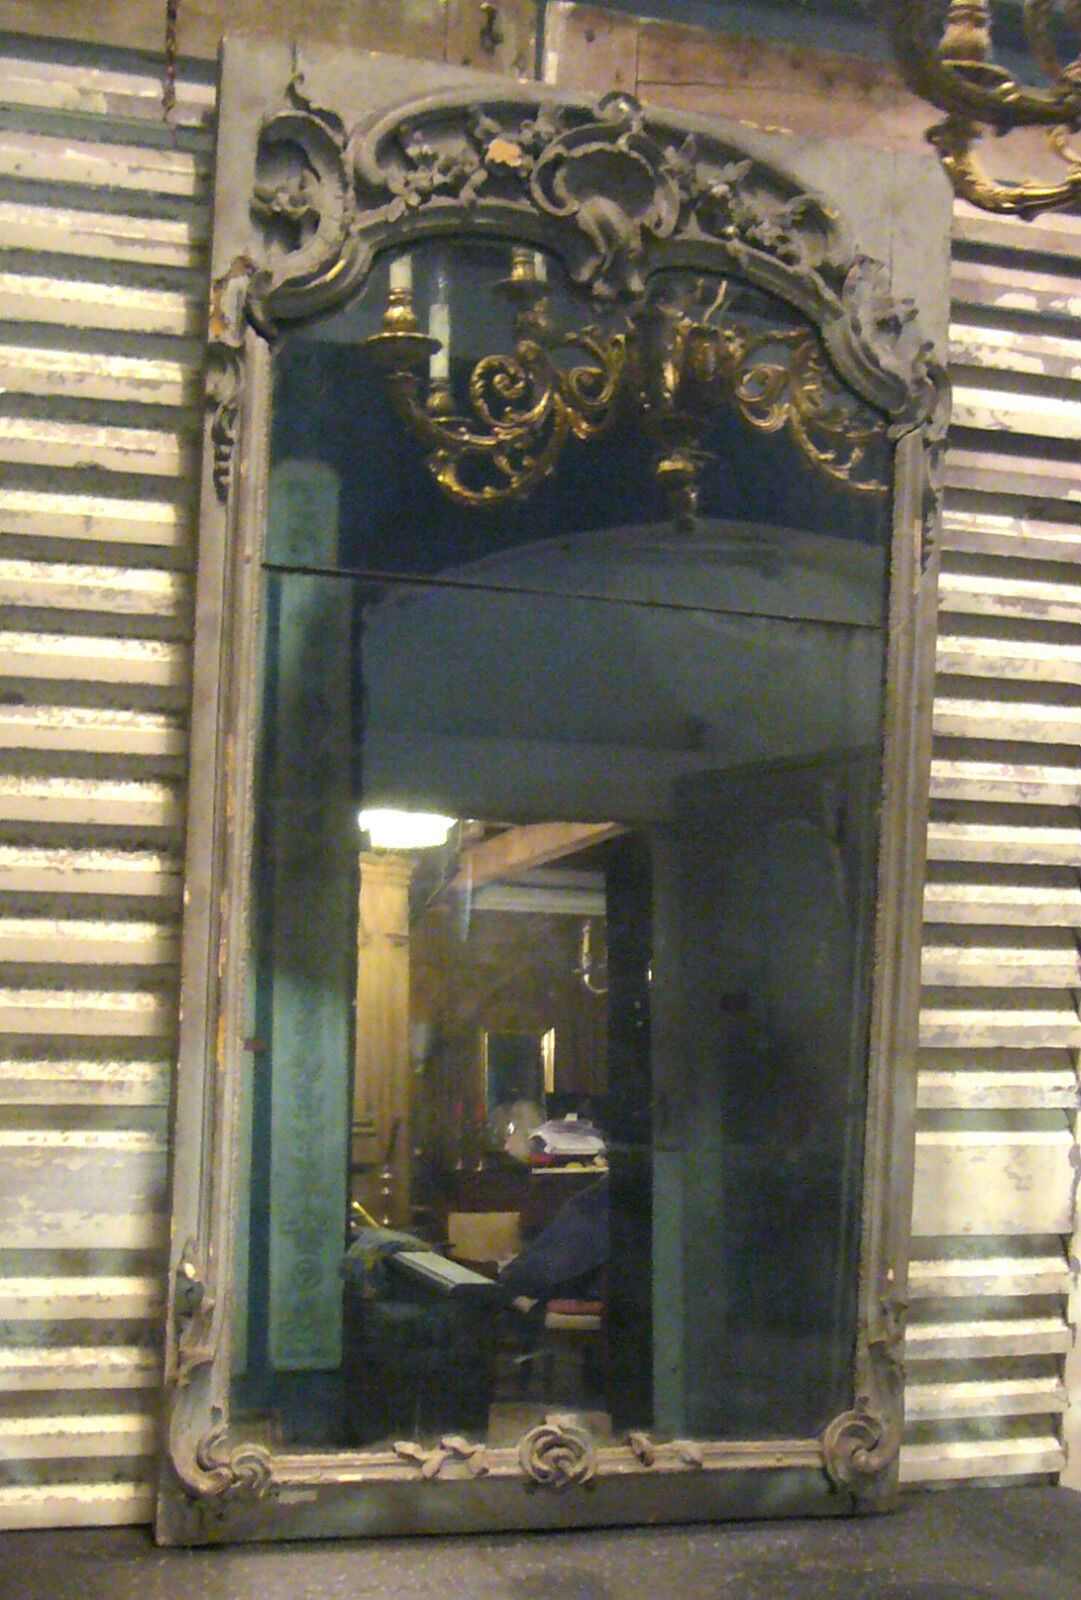 Spiegel Wandspiegel Louis XVI Spiegel Barock mirror trumeau Louis XV Spiegel Spiegel  LUXONAR.com Spiegel Wandspiegel Louis XVI Spiegel Barock mirror trumeau Louis XV Spiegel Wien Österreich Online Kaufen